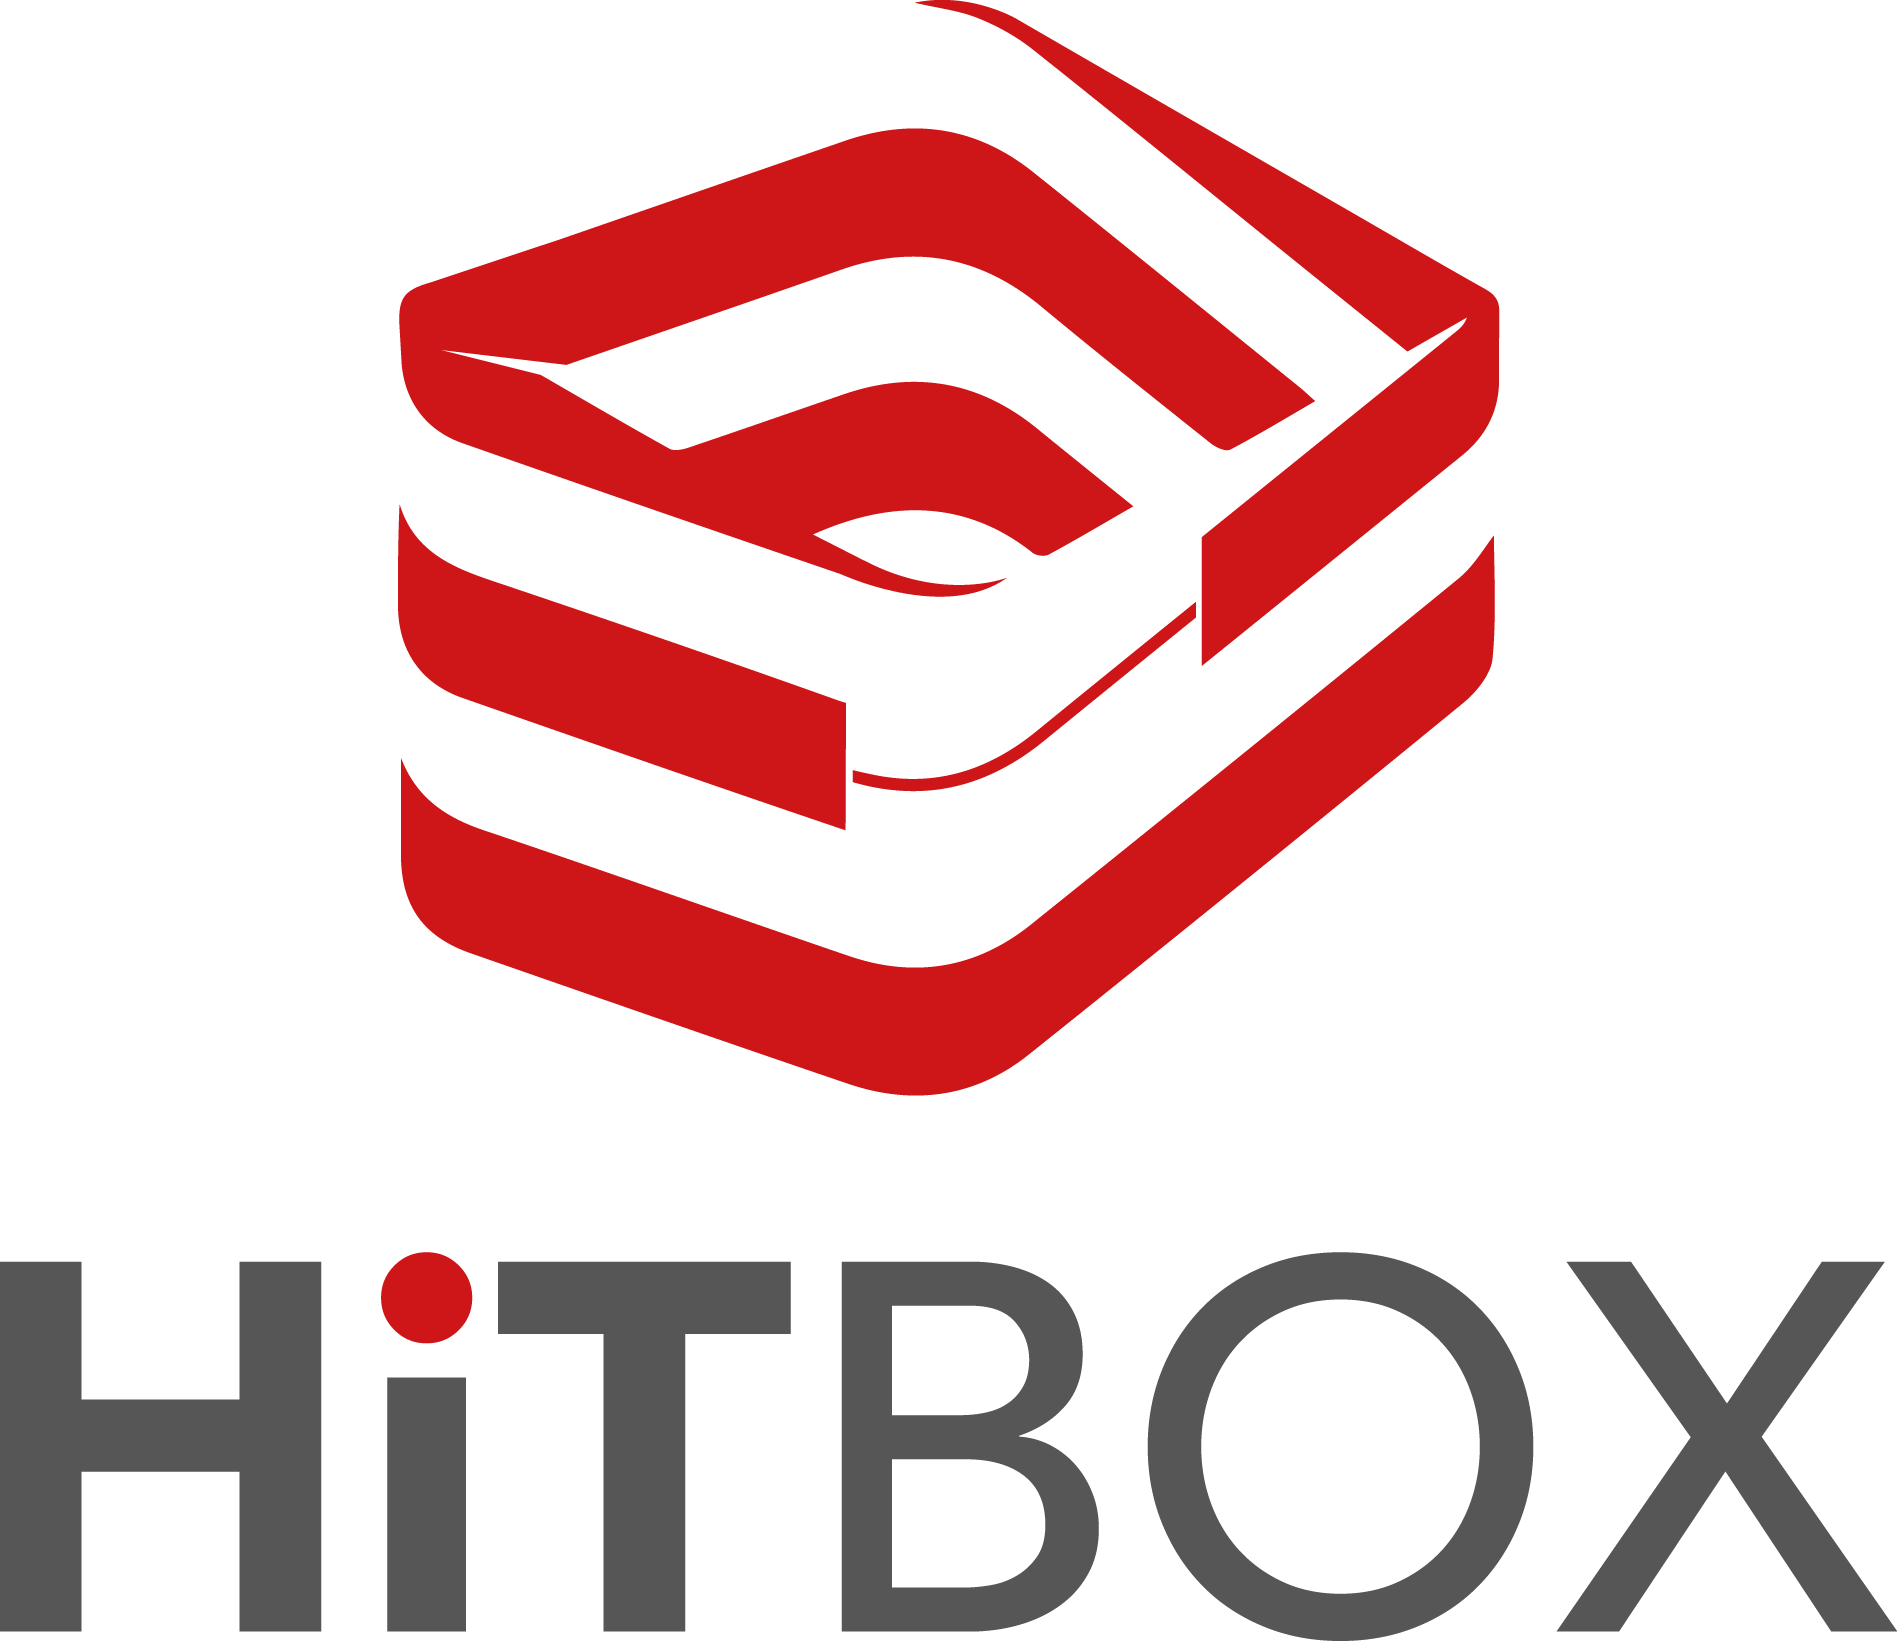 HITBOX